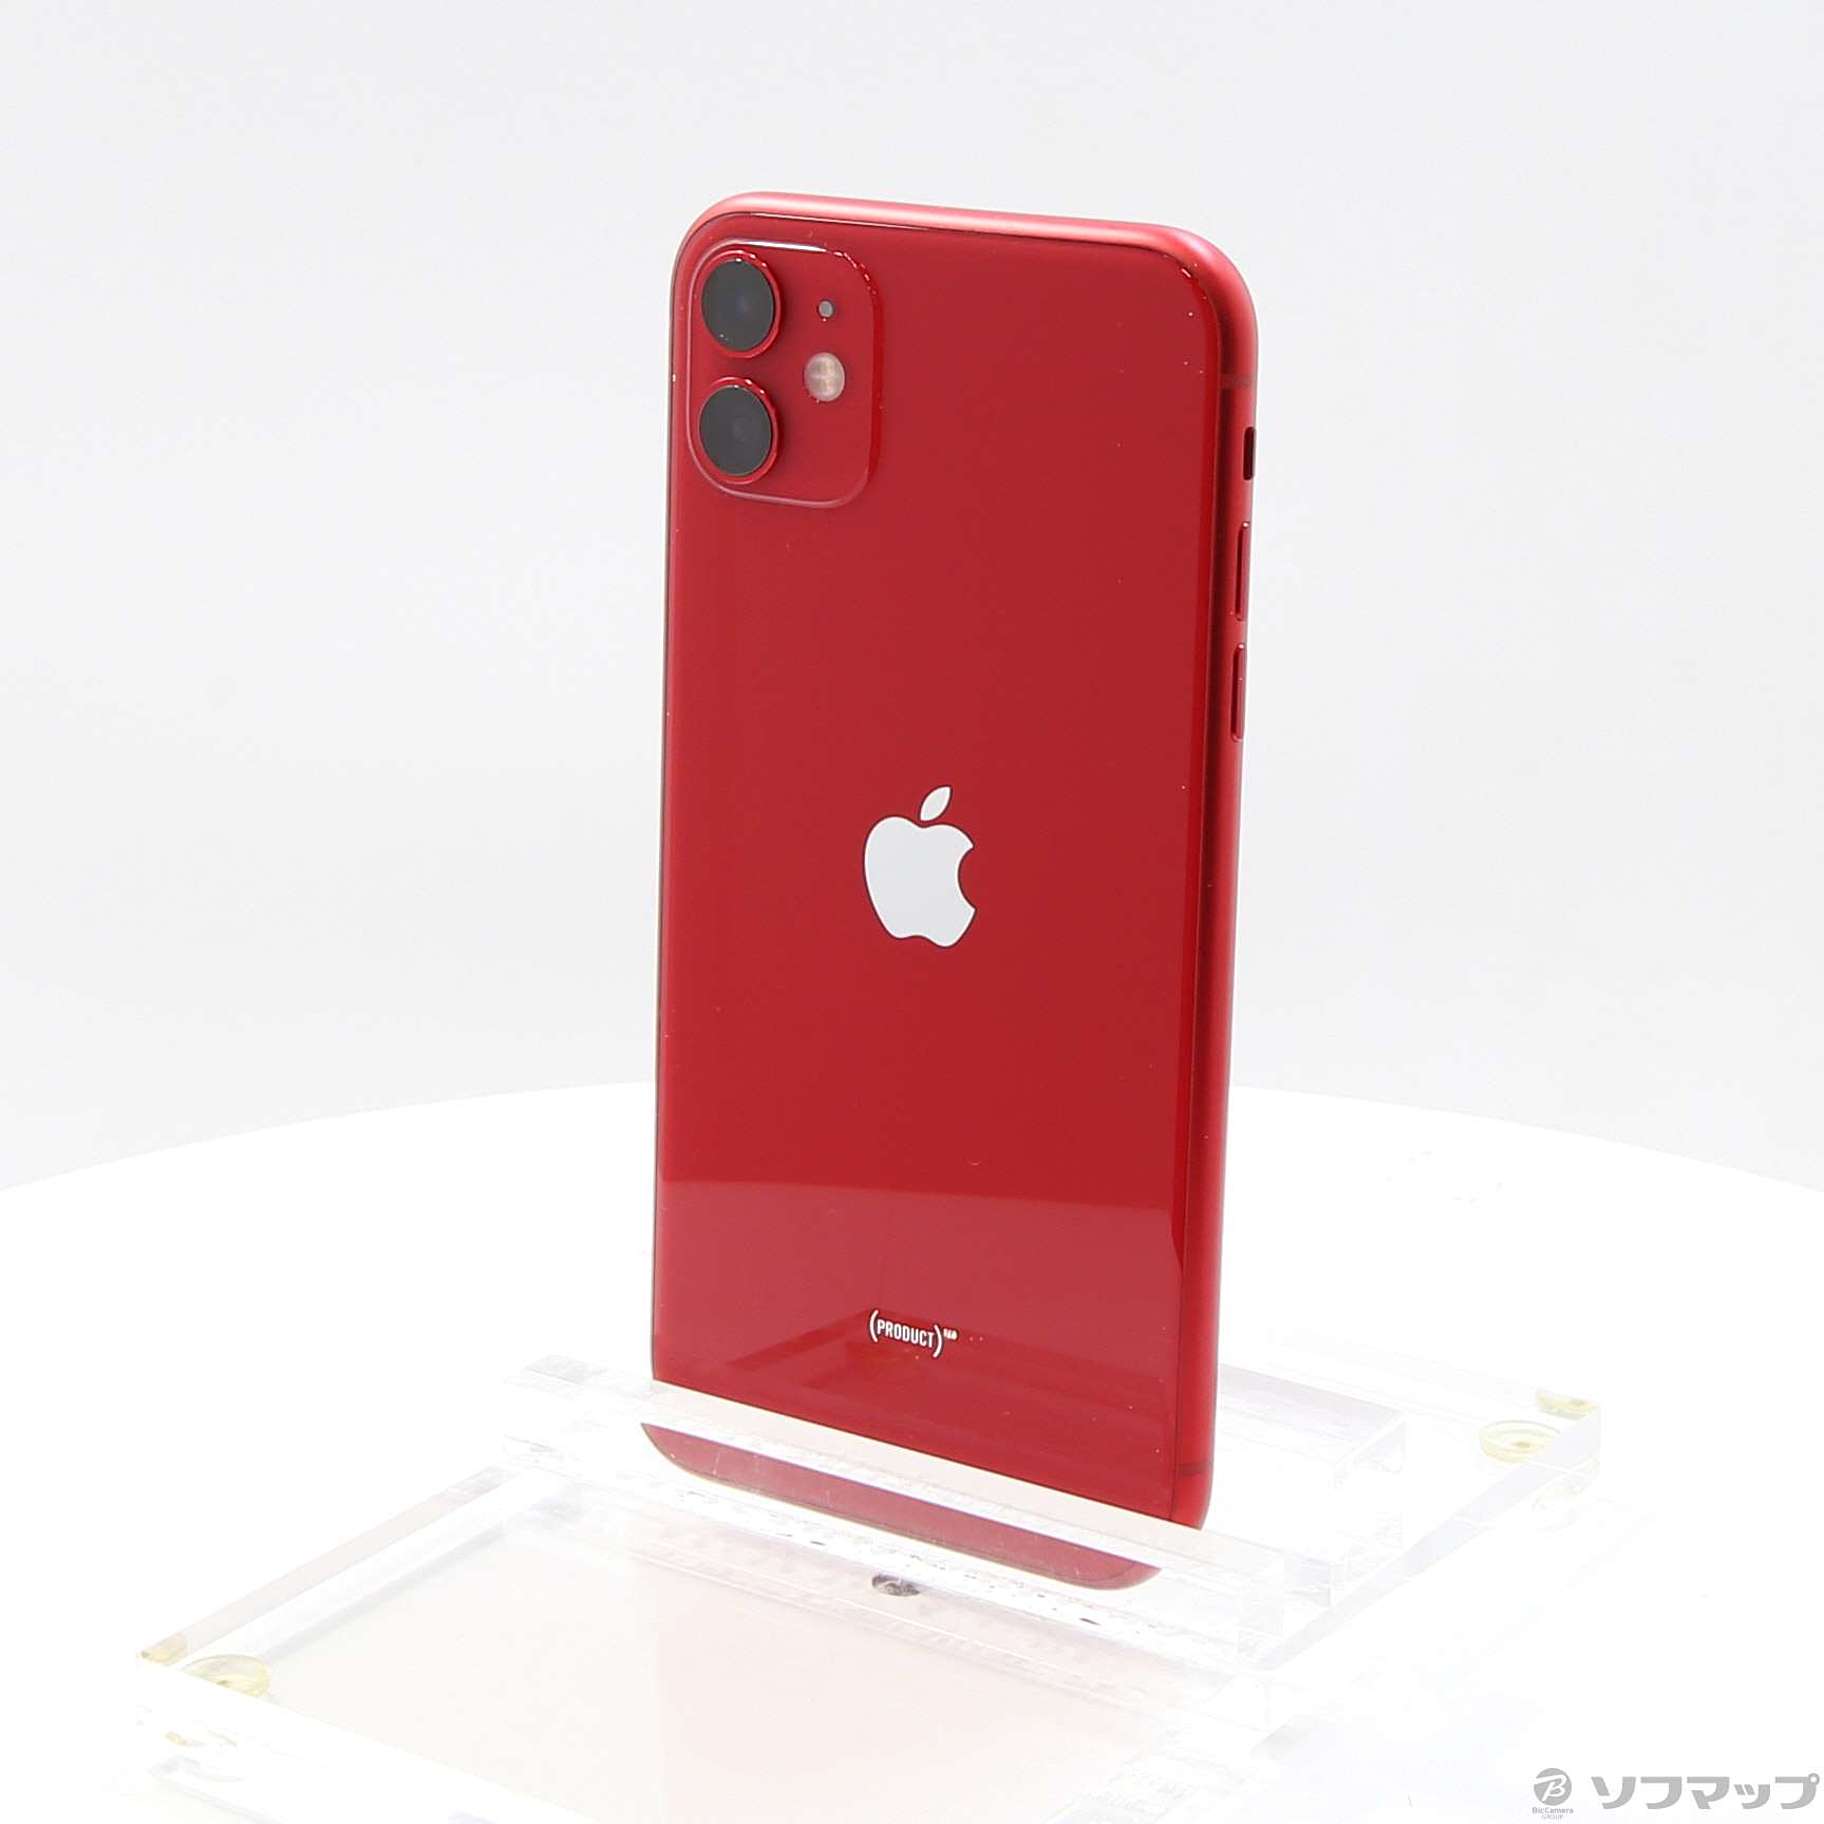 【新品フィルム未開封】iPhone11 64GB SIMフリー レッド